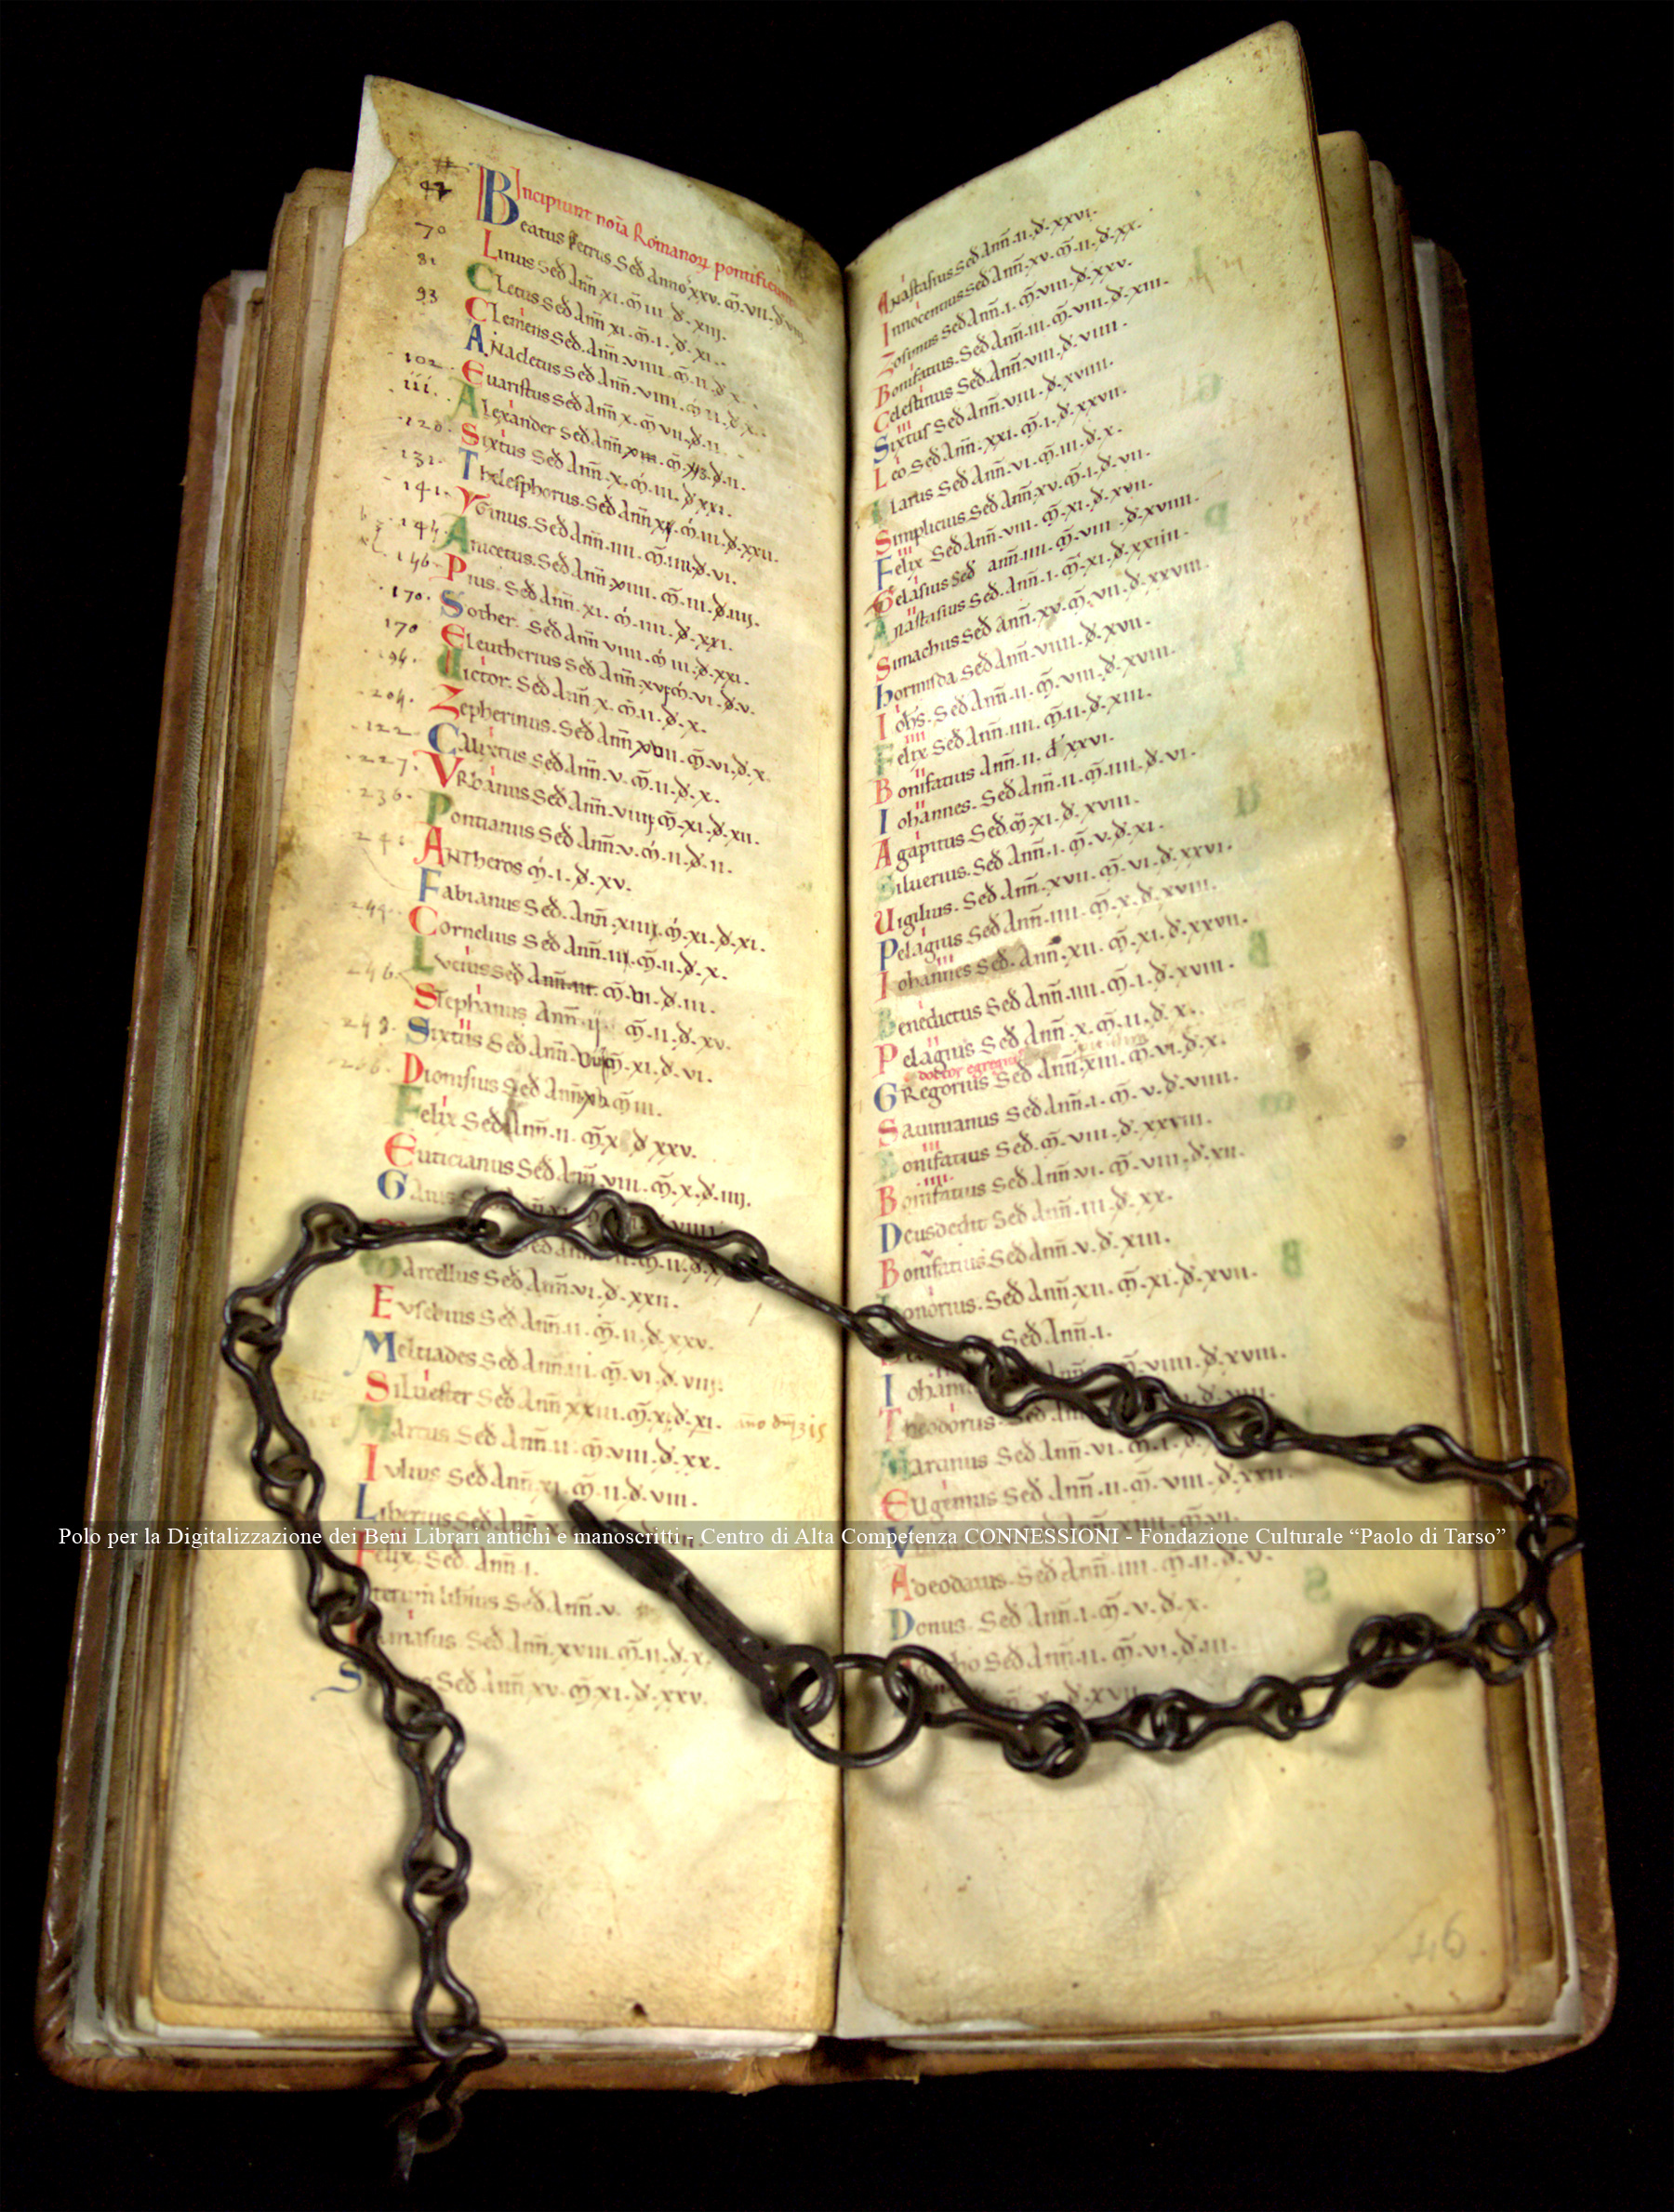 Polo per la Digitalizzazione dei Beni Librari antichi e manoscritti